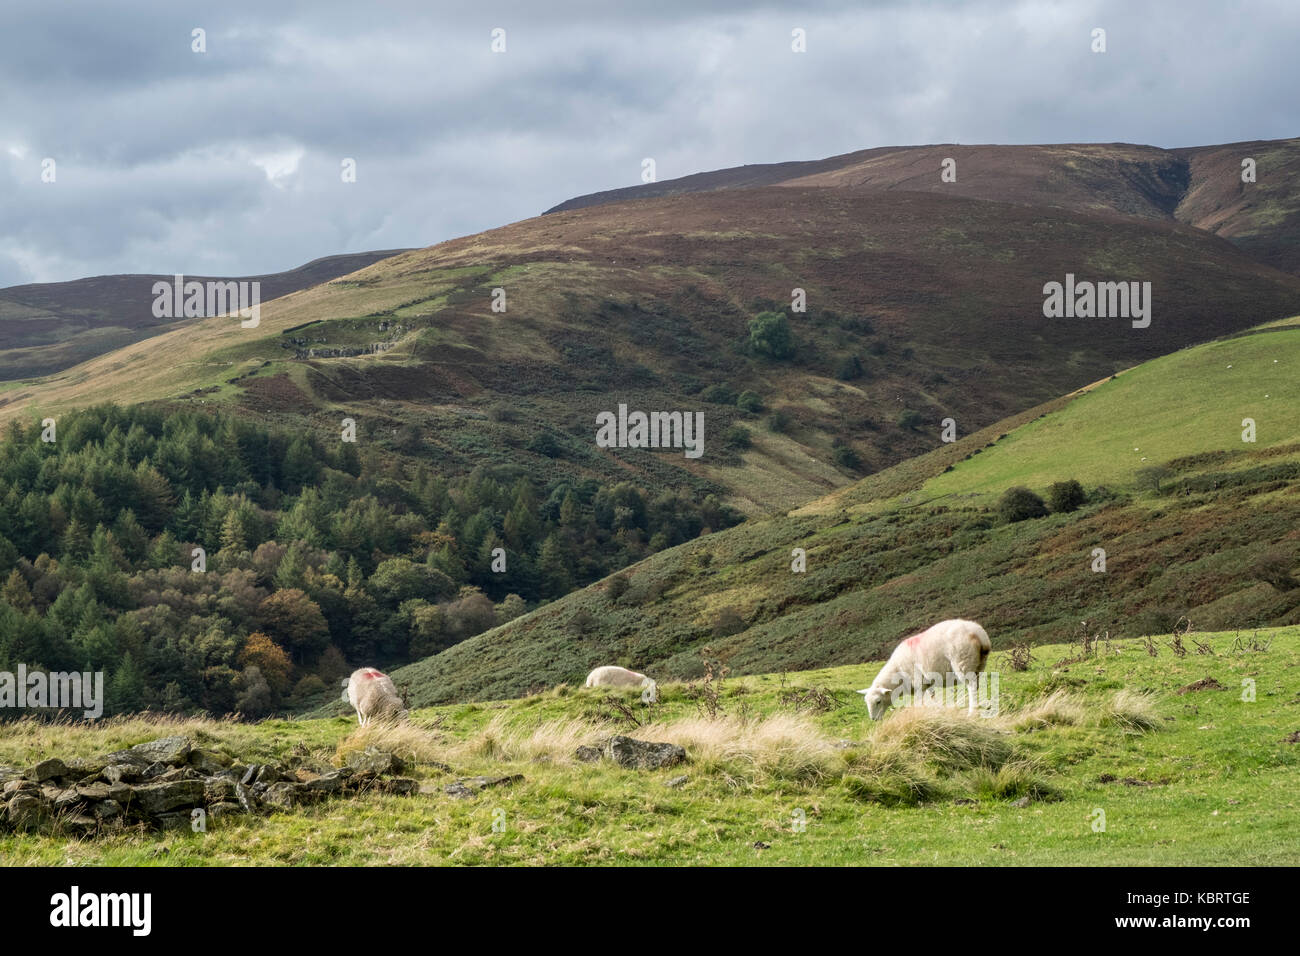 Pecore al pascolo nella luce del sole con le nuvole scure si avvicina, sulle colline intorno a Jaggers Clough, Derbyshire, Parco Nazionale di Peak District, England, Regno Unito Foto Stock